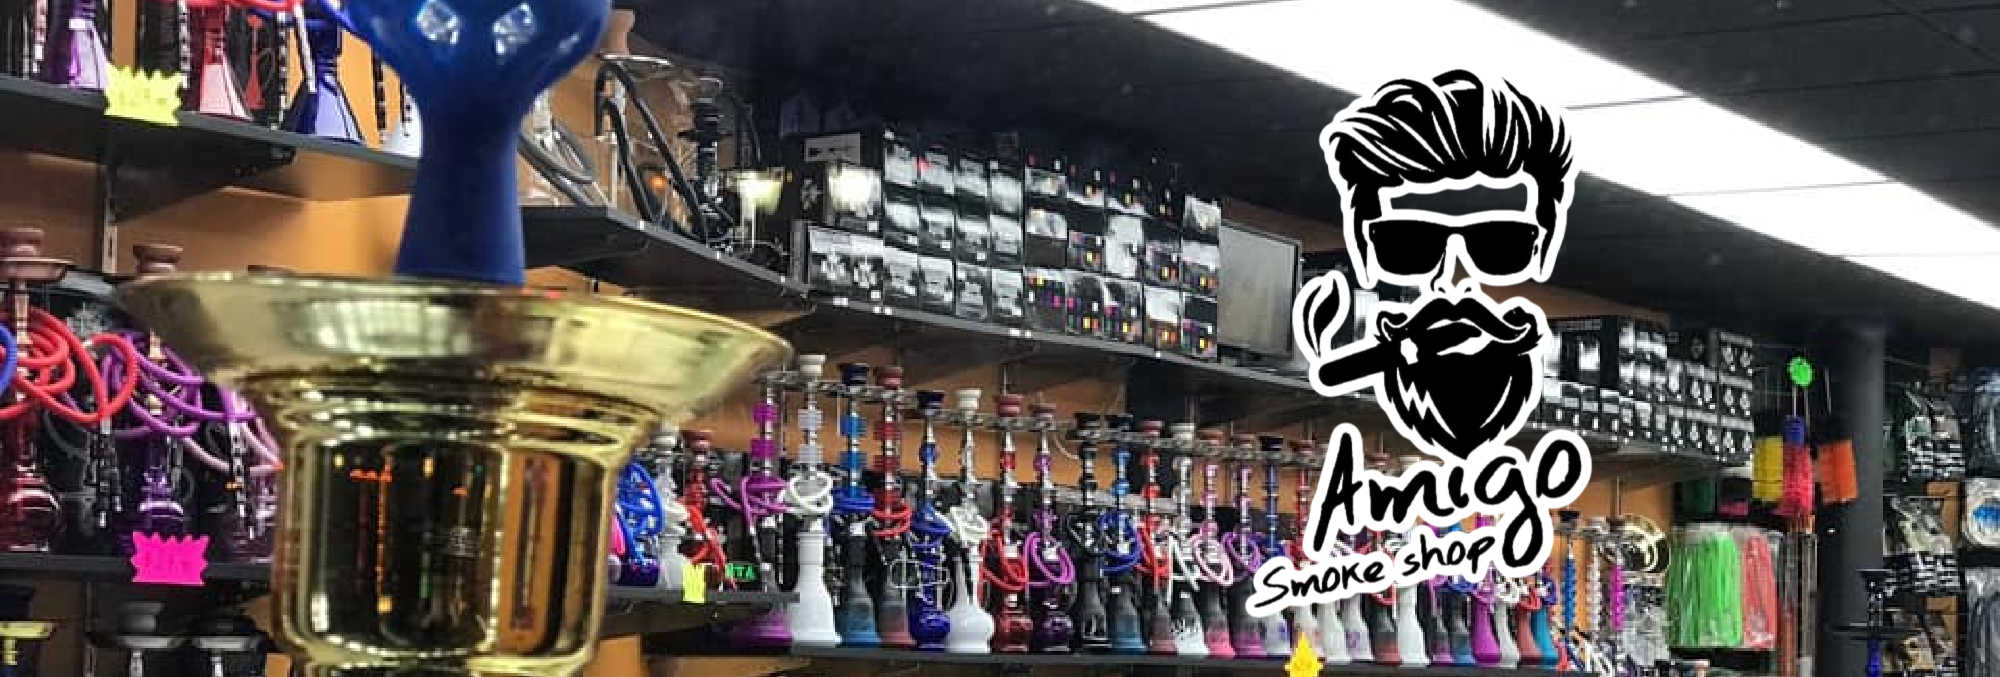 image of amigo smoke shop in union city nj